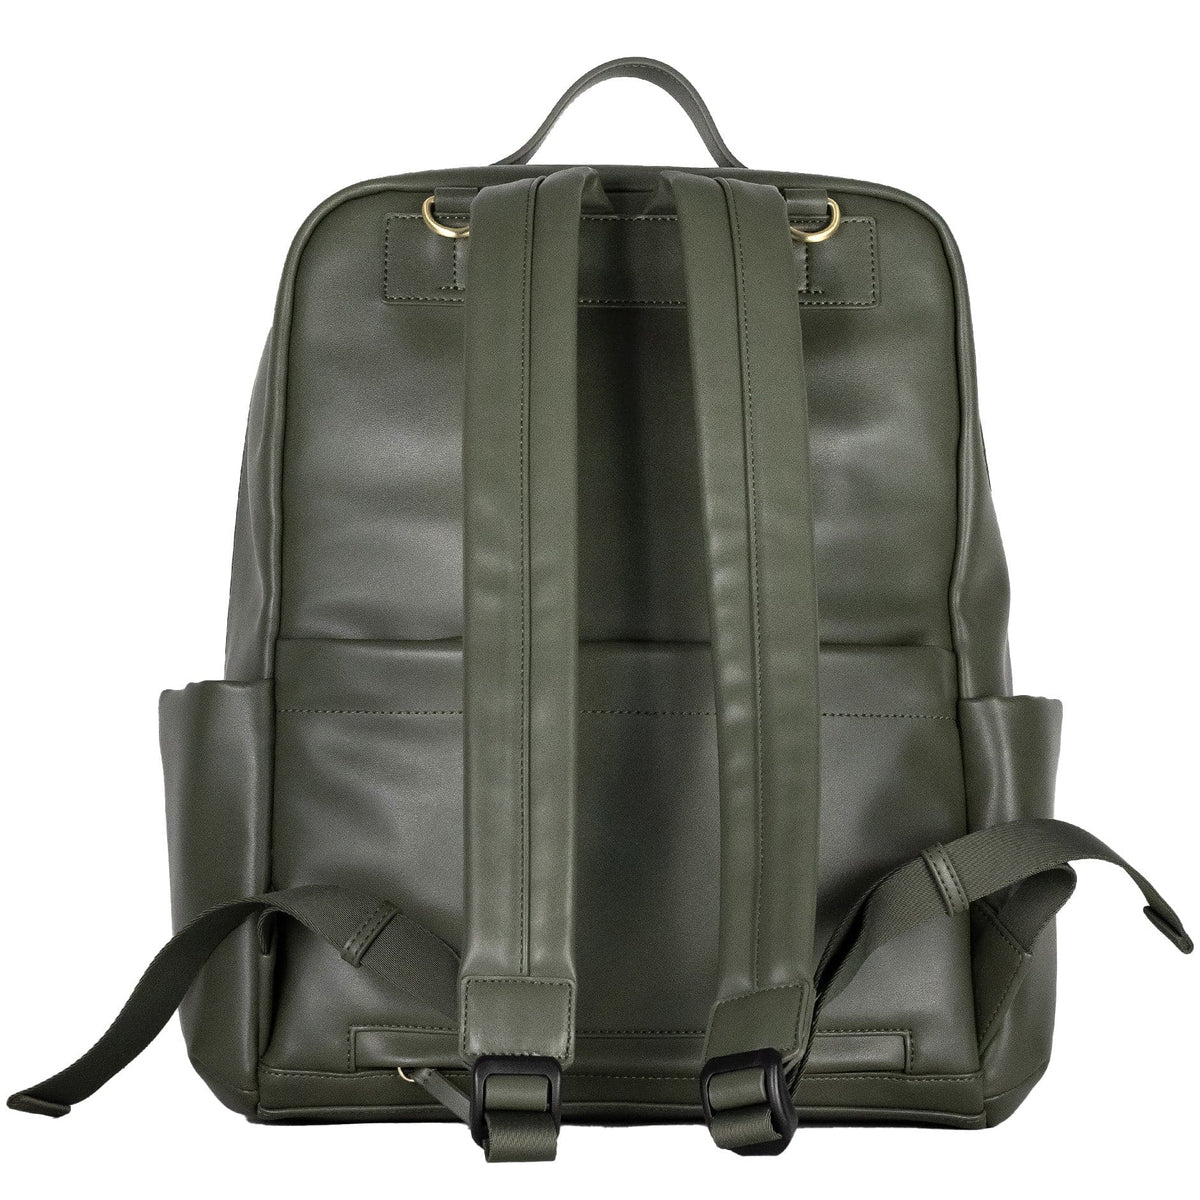 TWELVElittle Peek-A-Boo Diaper Bag Backpack